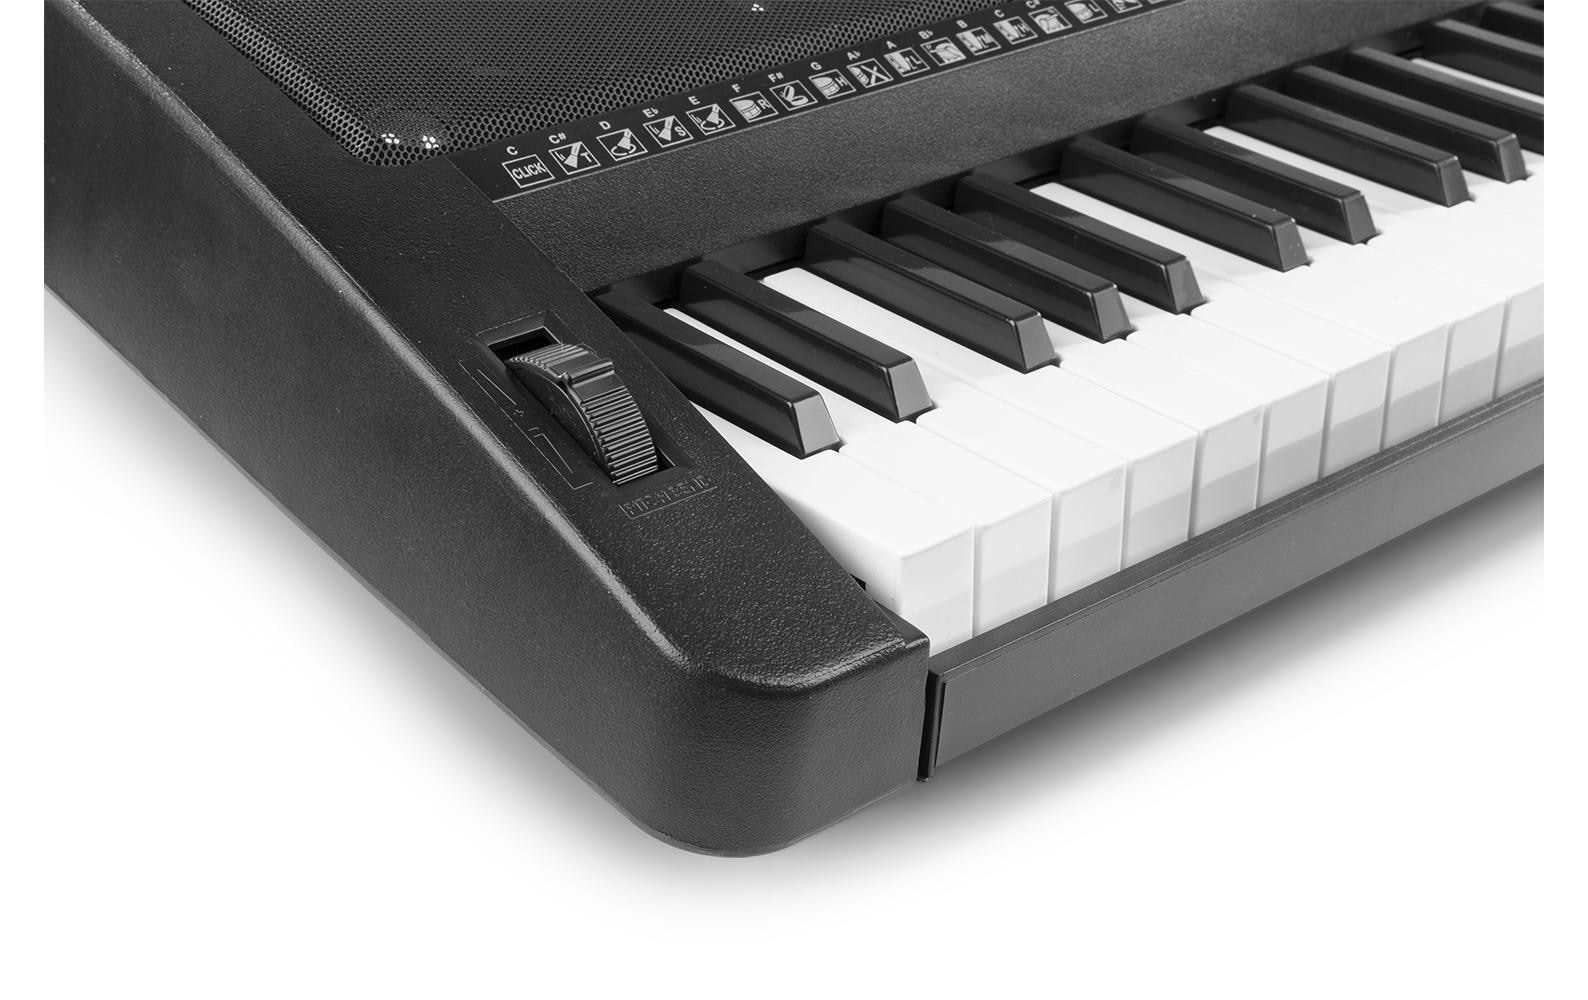 Keyboard »MAX KB12P«